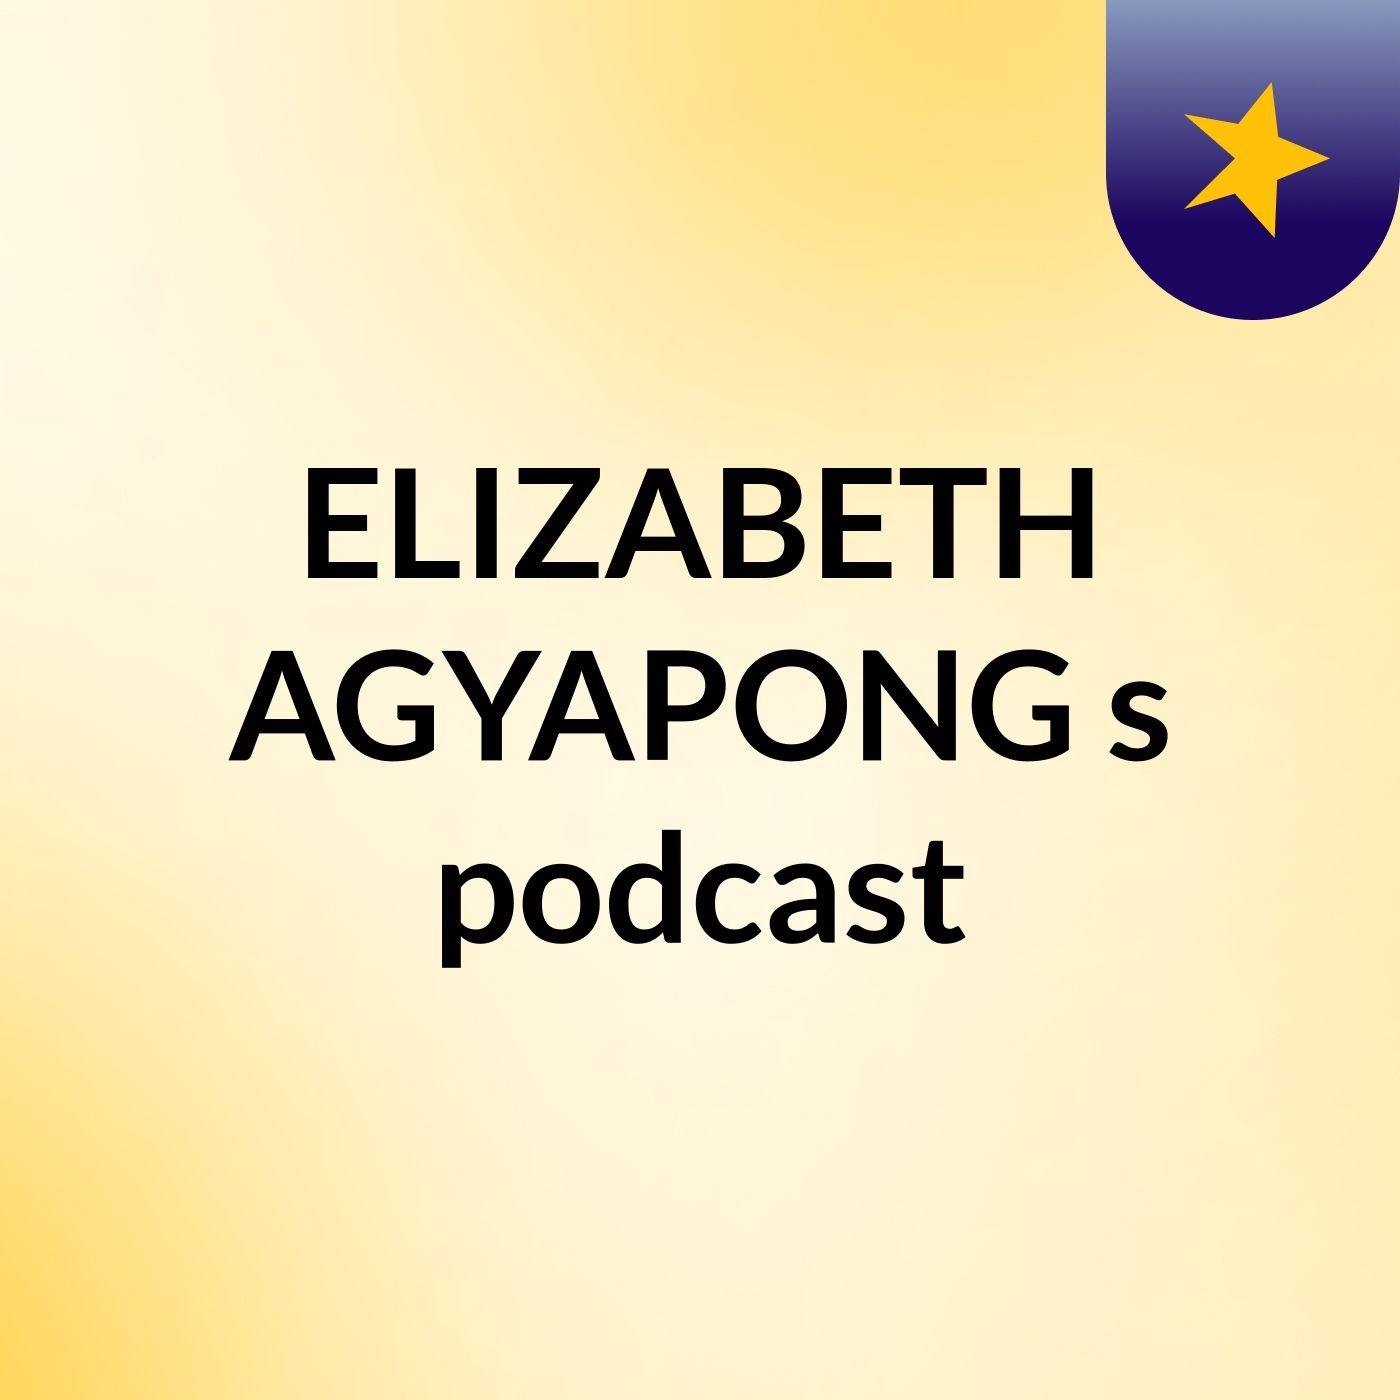 Episode 1 - ELIZABETH AGYAPONG's podcast